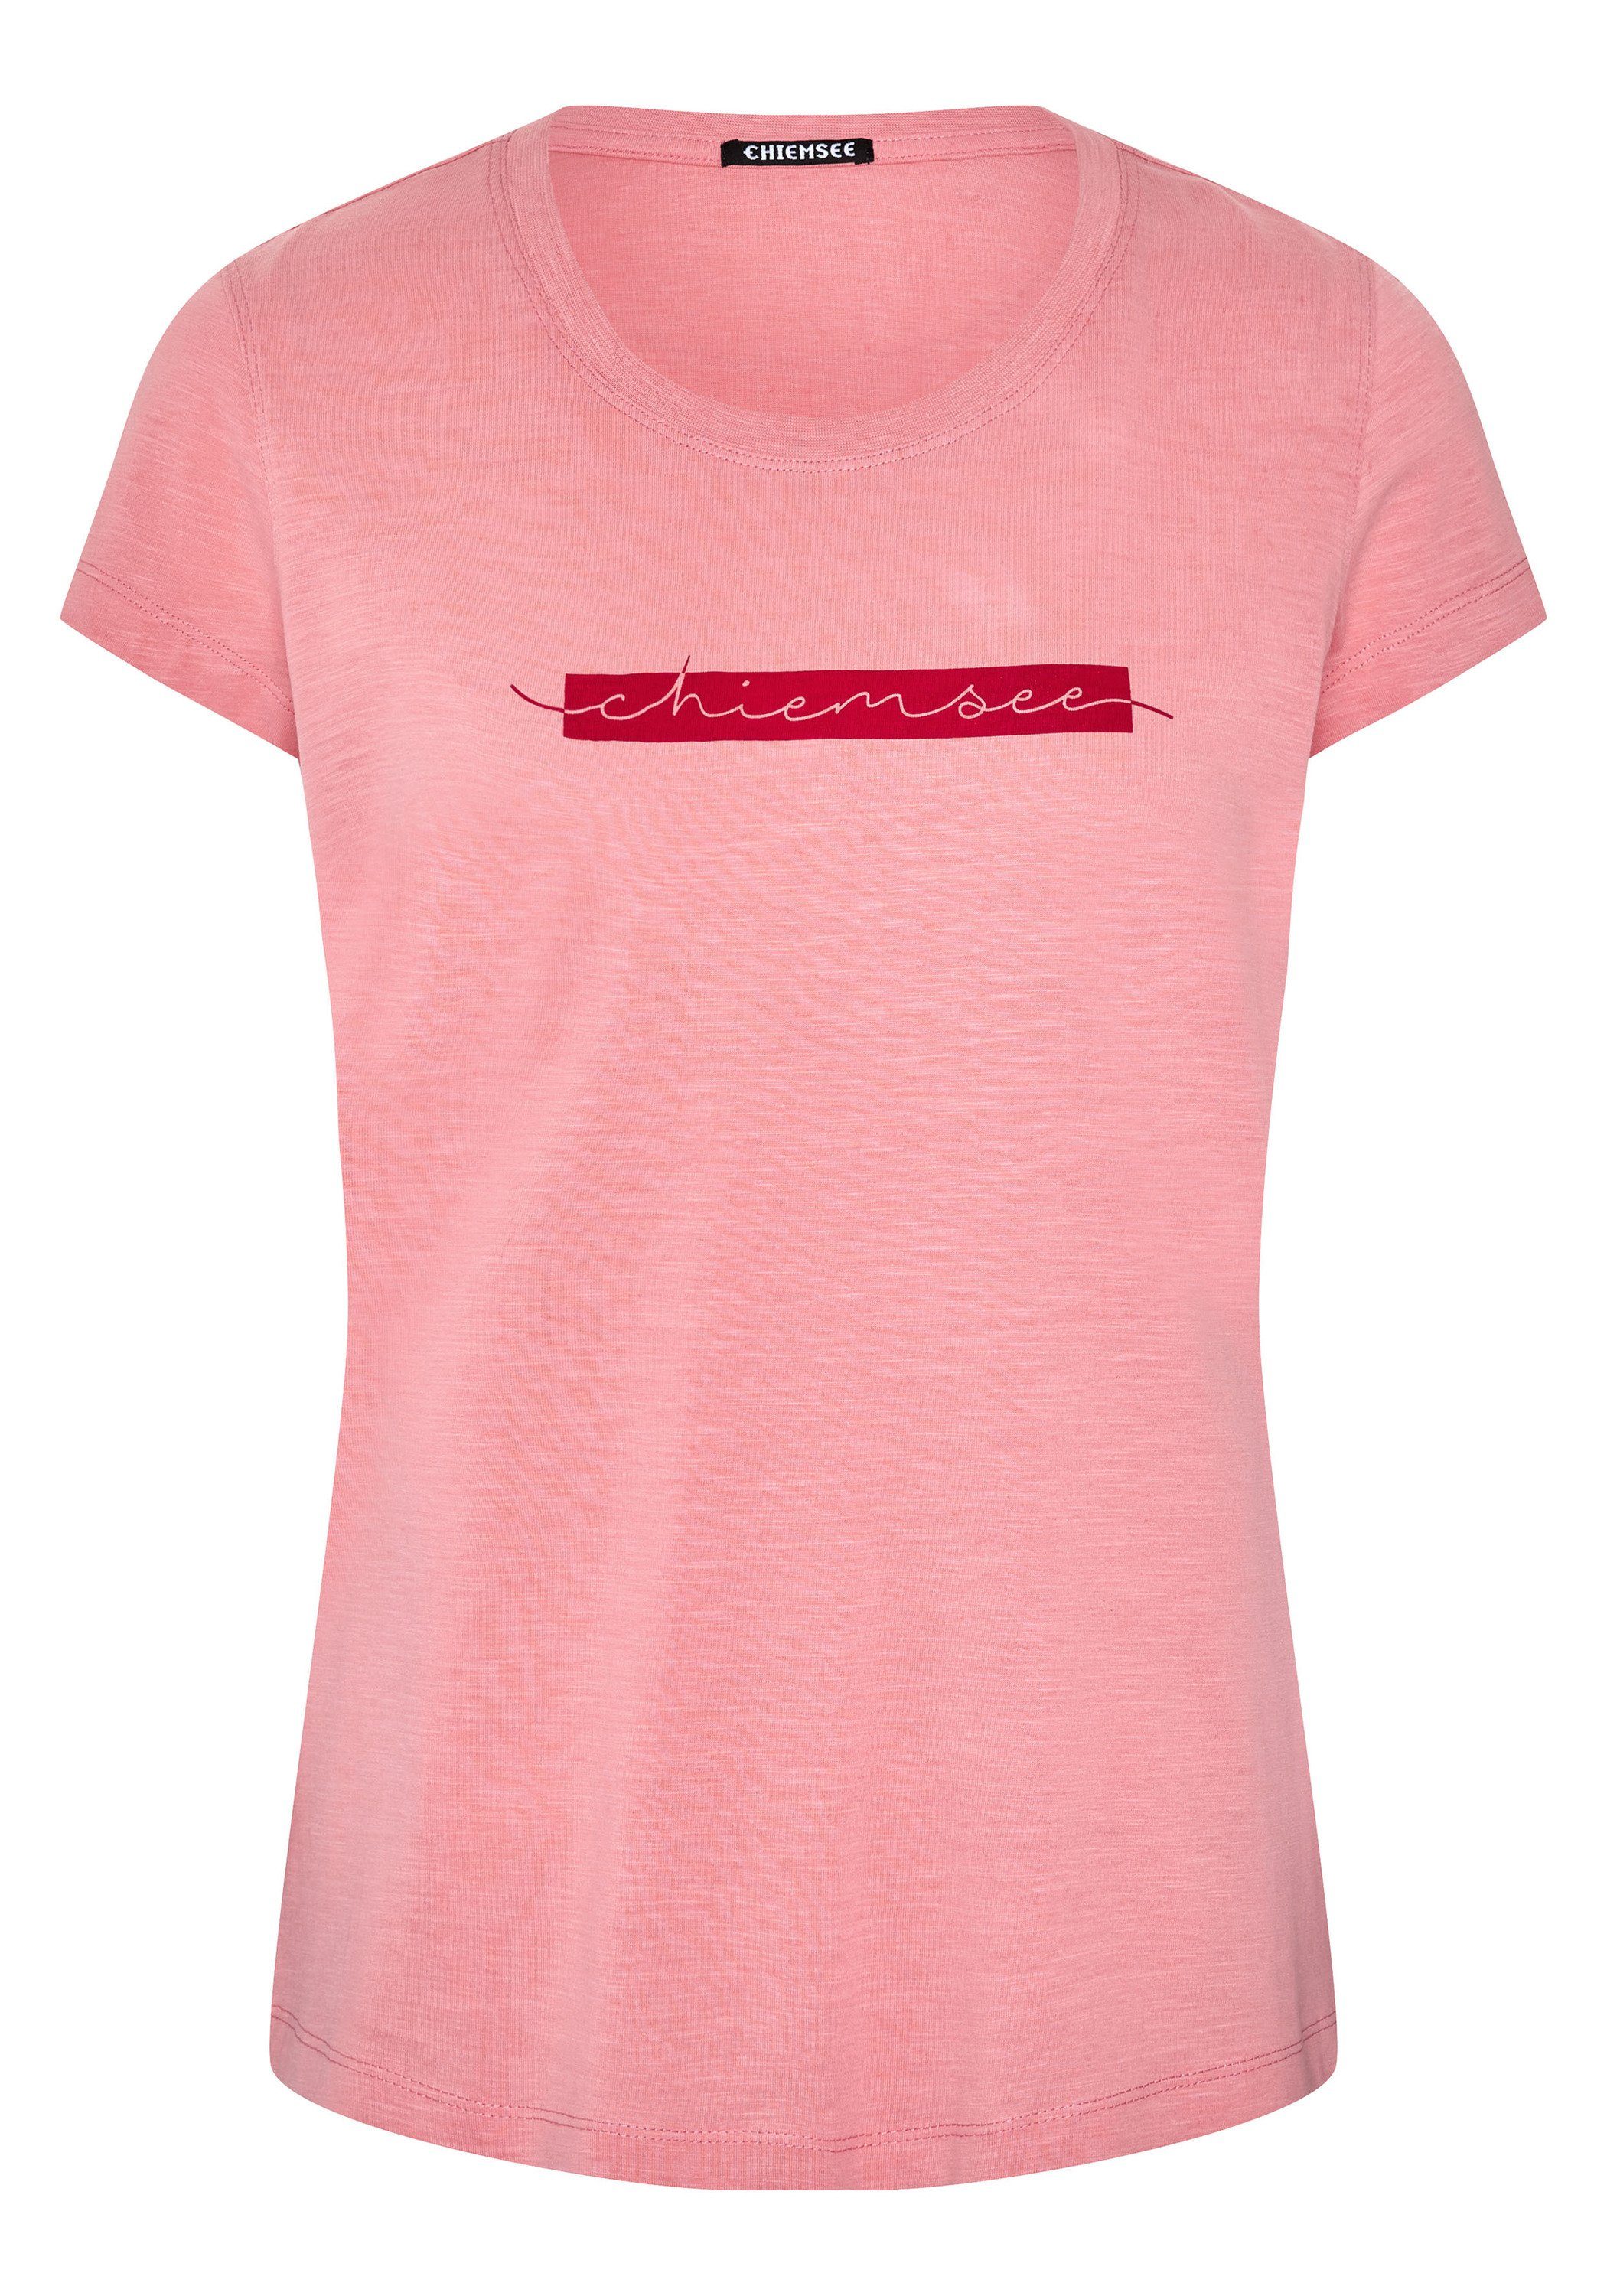 Chiemsee Print-Shirt T-Shirt Salmon Logo-Schriftzug Rose mit 1